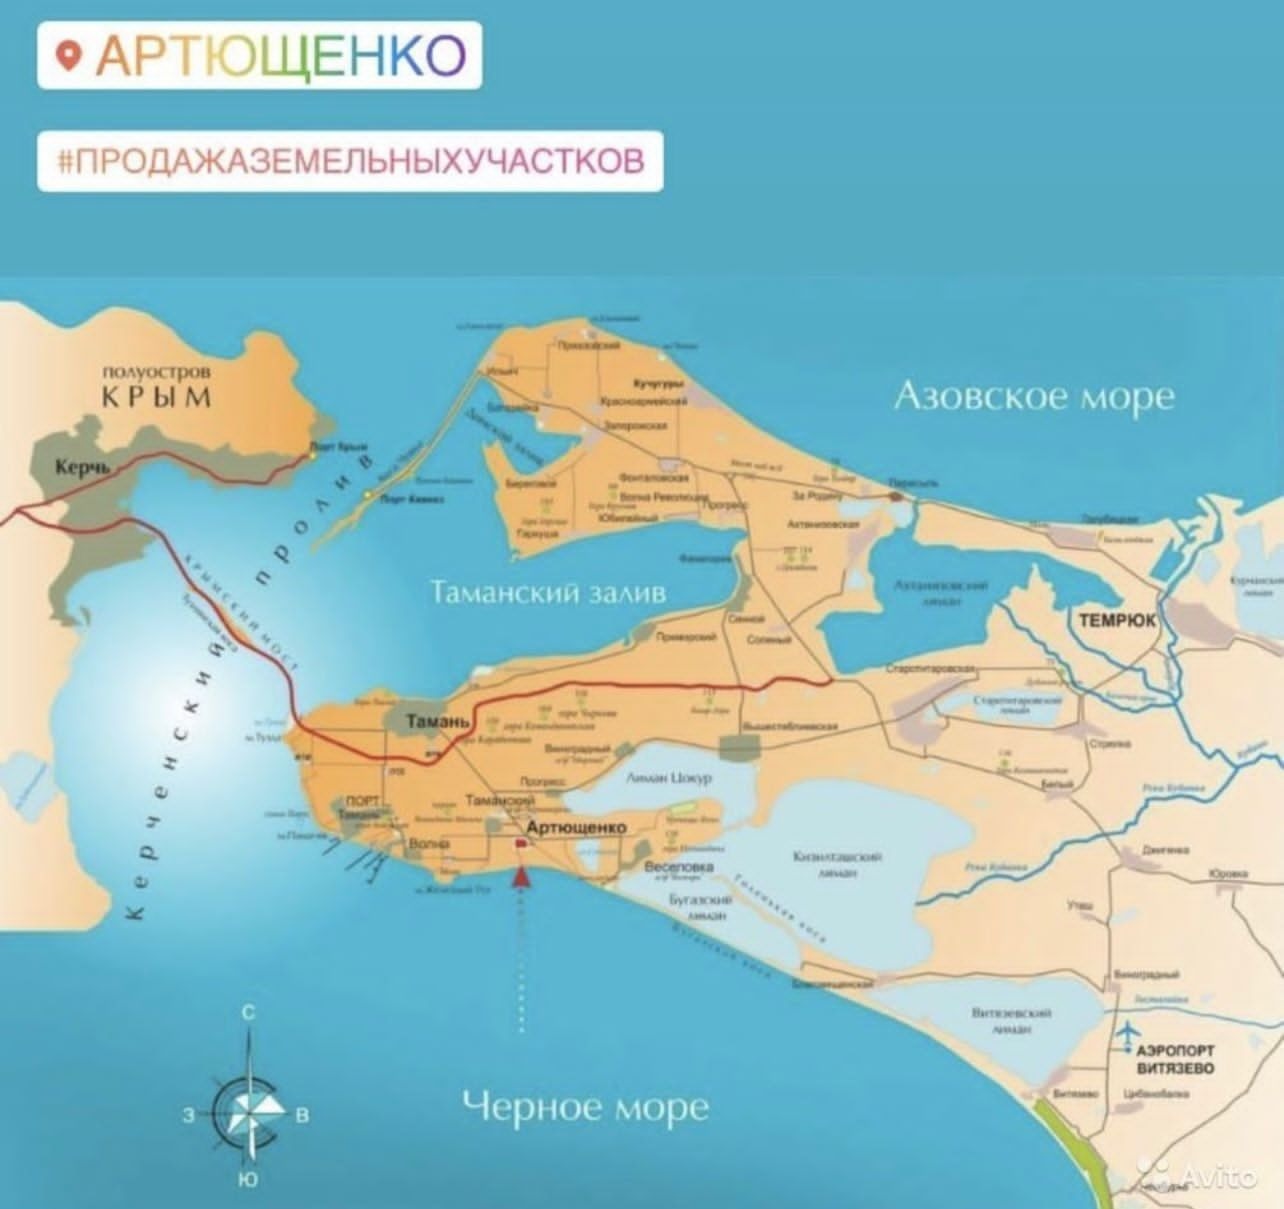 Азовское море - видео. Смотреть азовское море - порно видео на lavandasport.ru